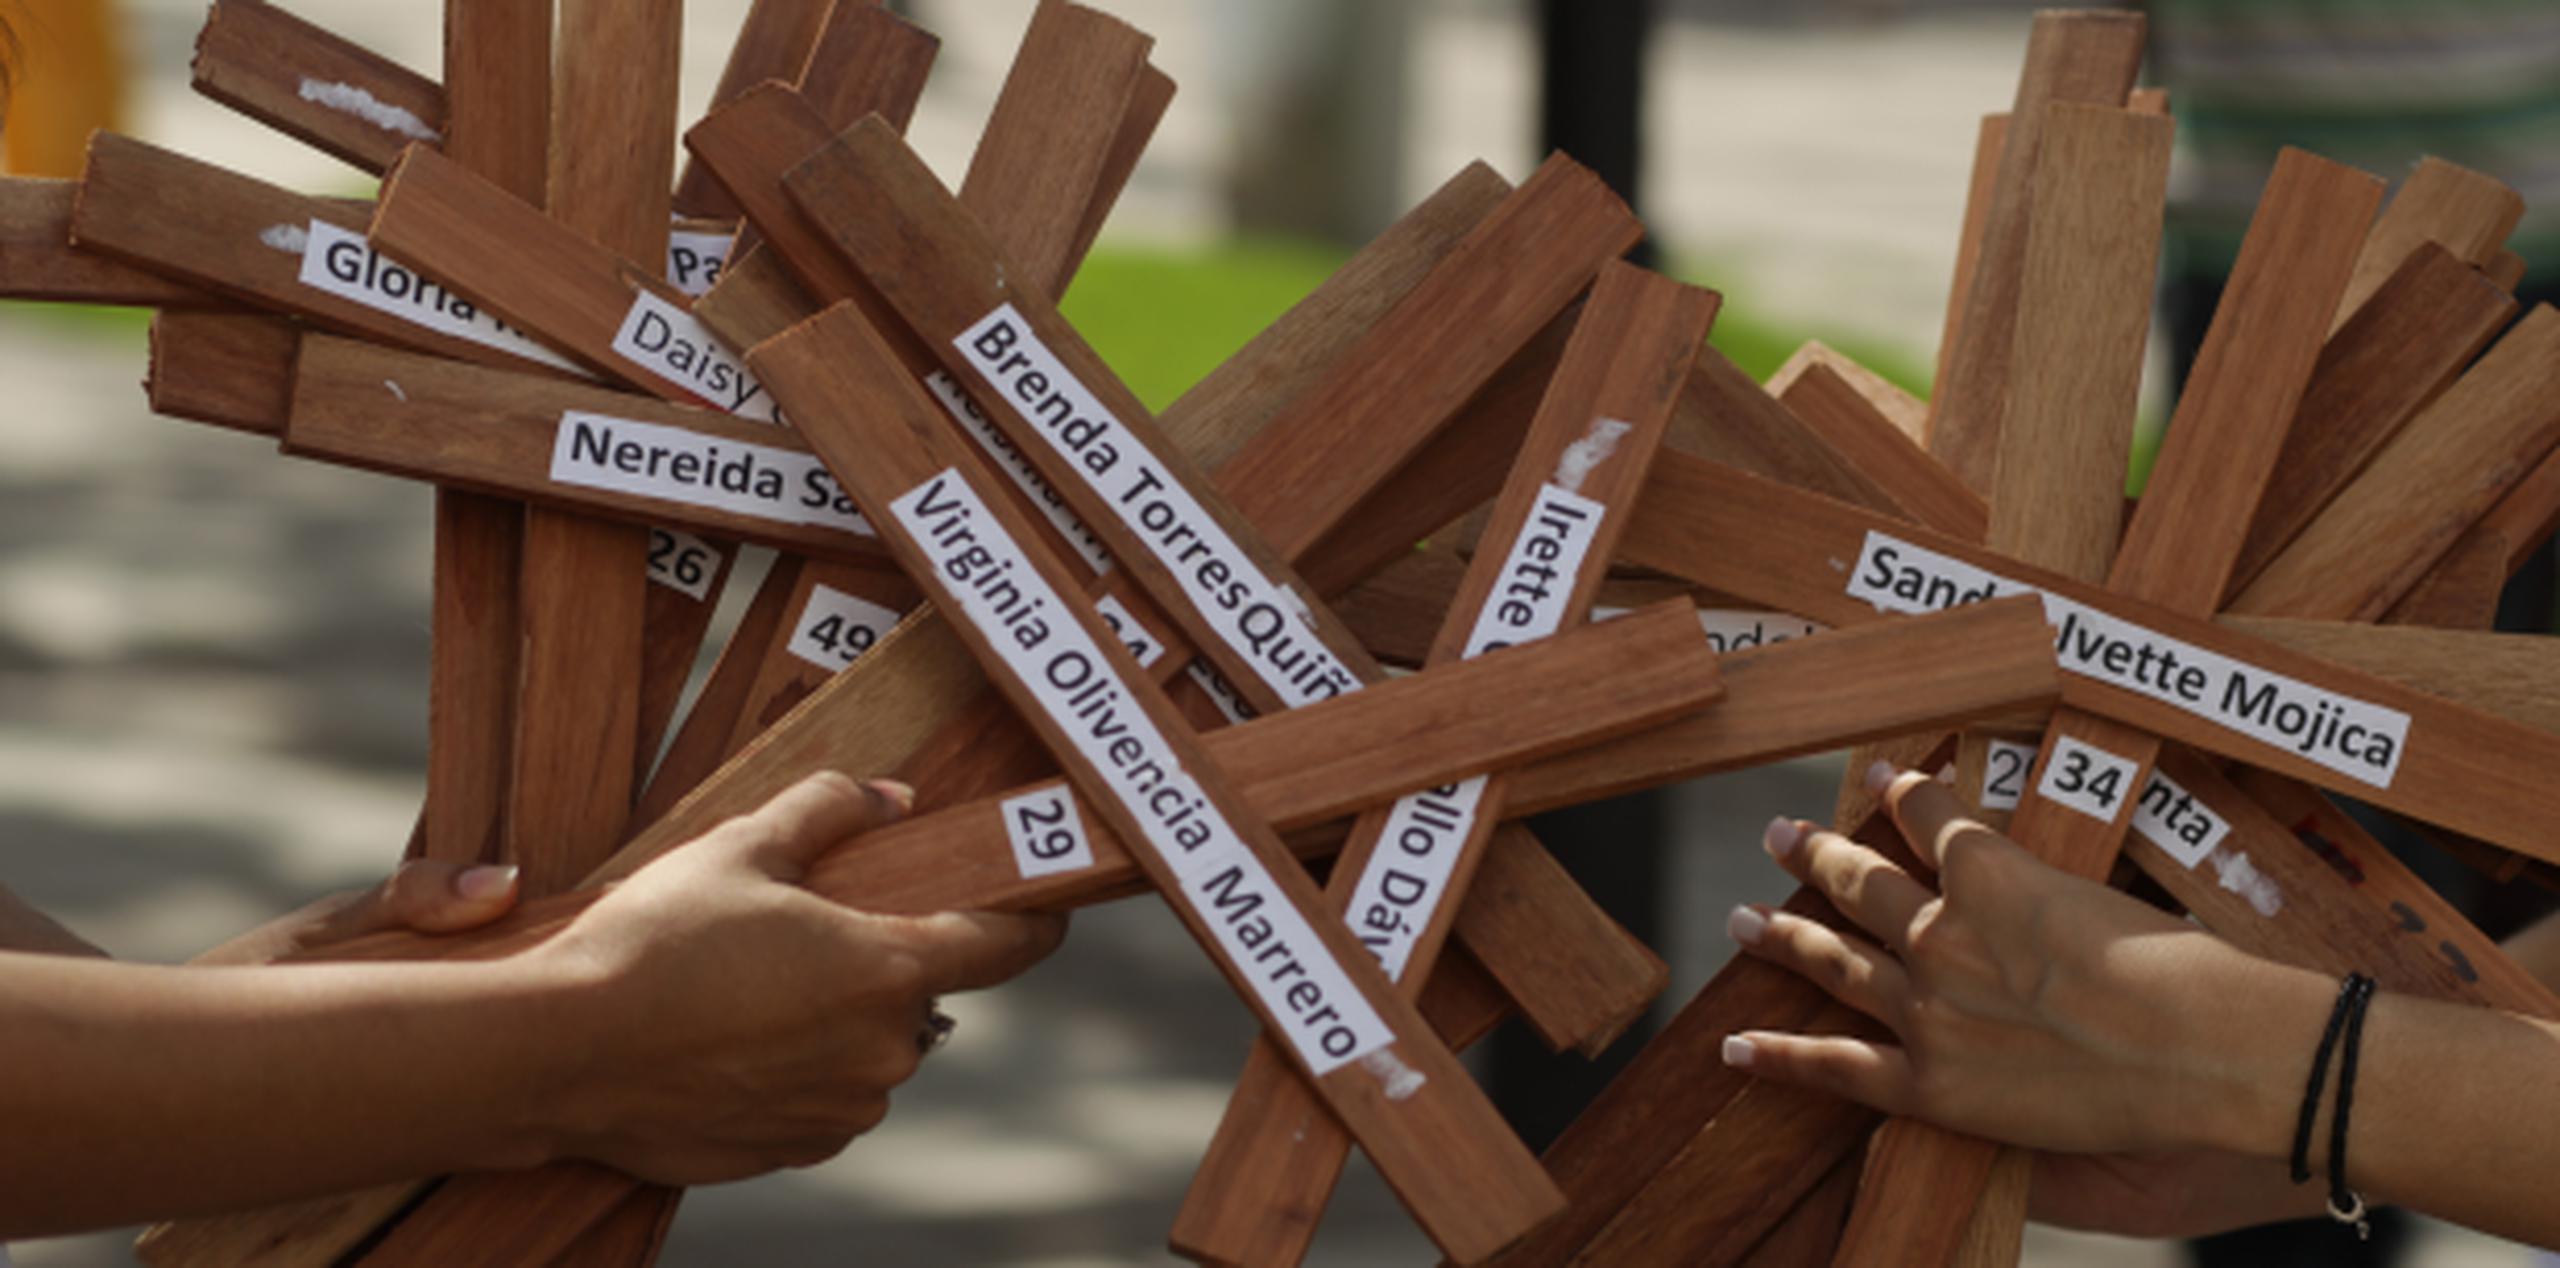 Durante la actividad se leyeron los nombres de 28 mujeres víctimas de violencia de género desde el 2014. (FRANCISCO.RODRIGUEZ@GFRMEDIA.COM)